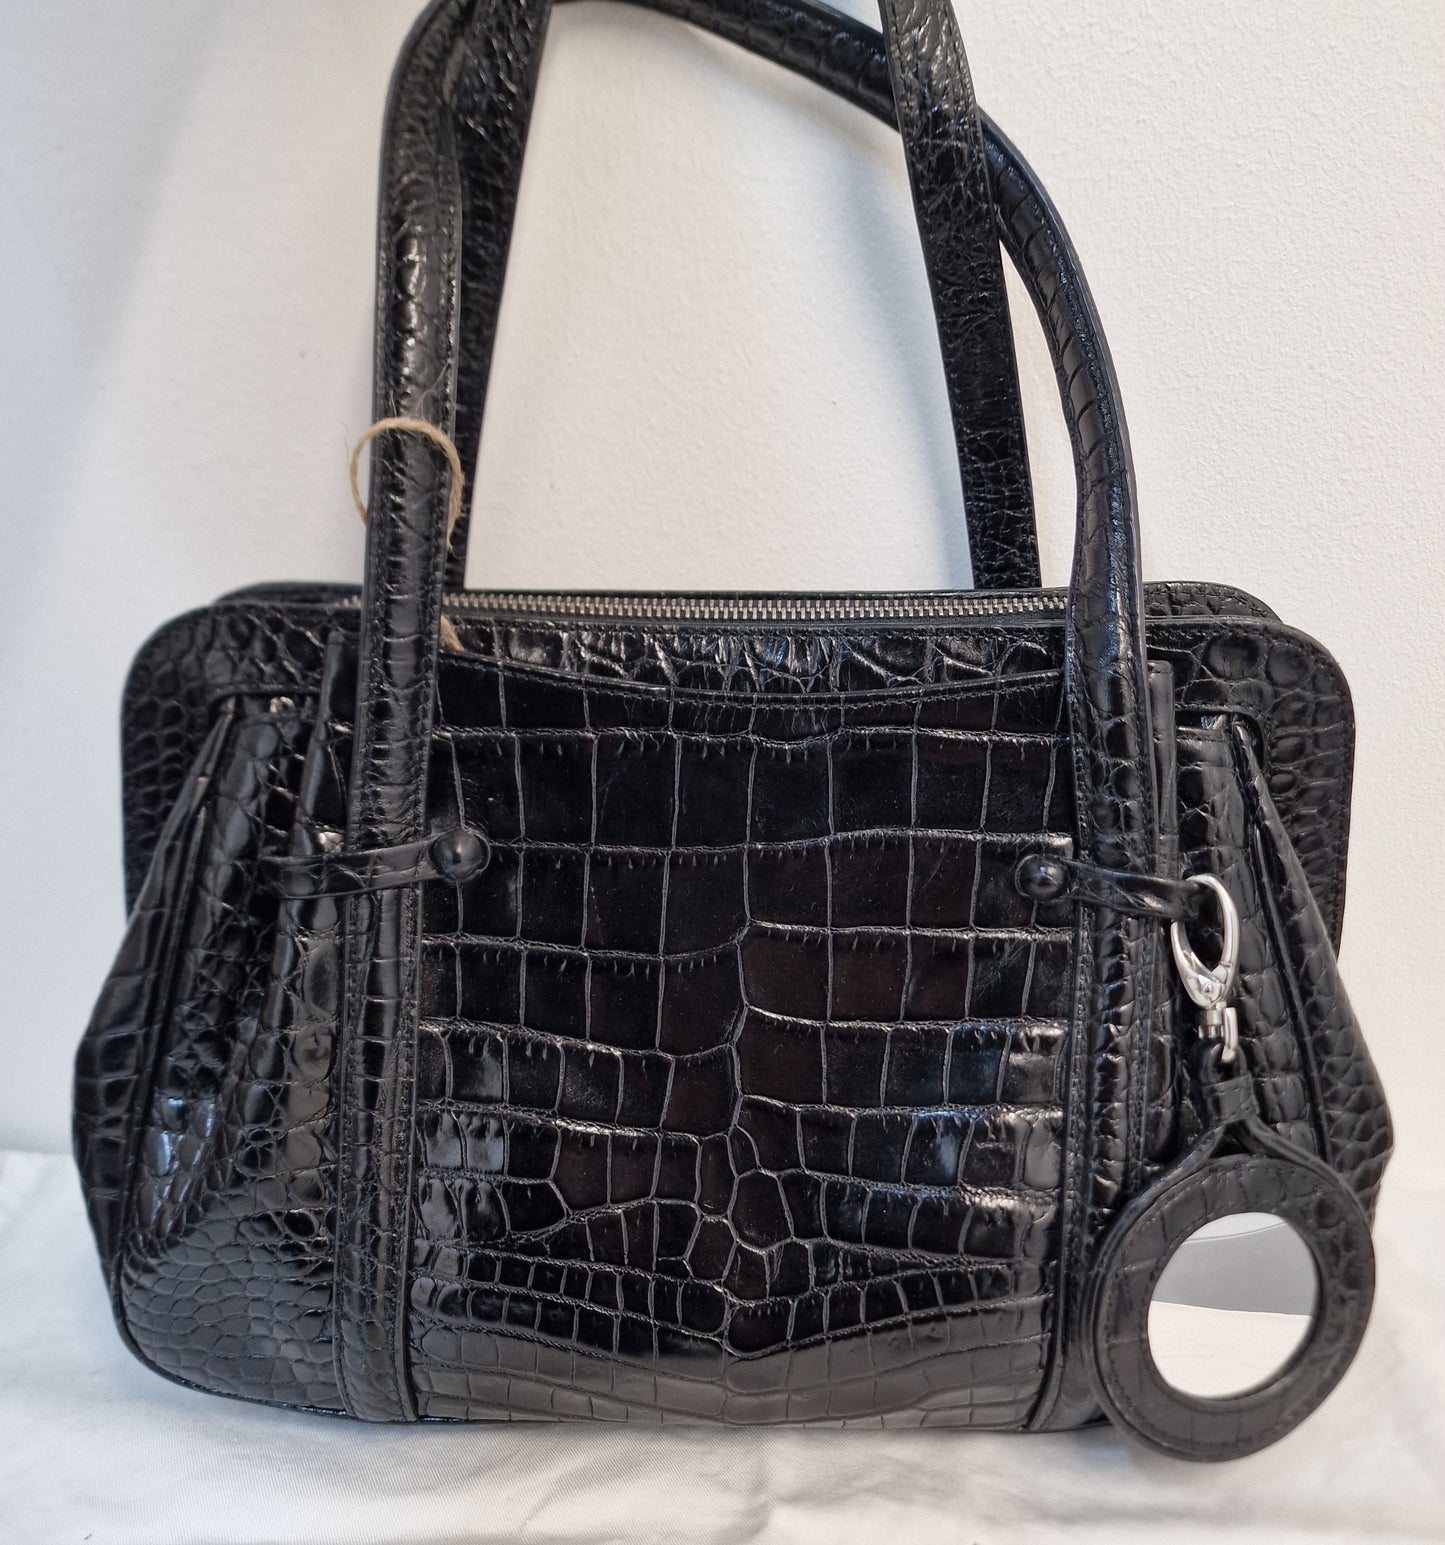 Lulu Guinness Black Croc Embossed Franka Handbag